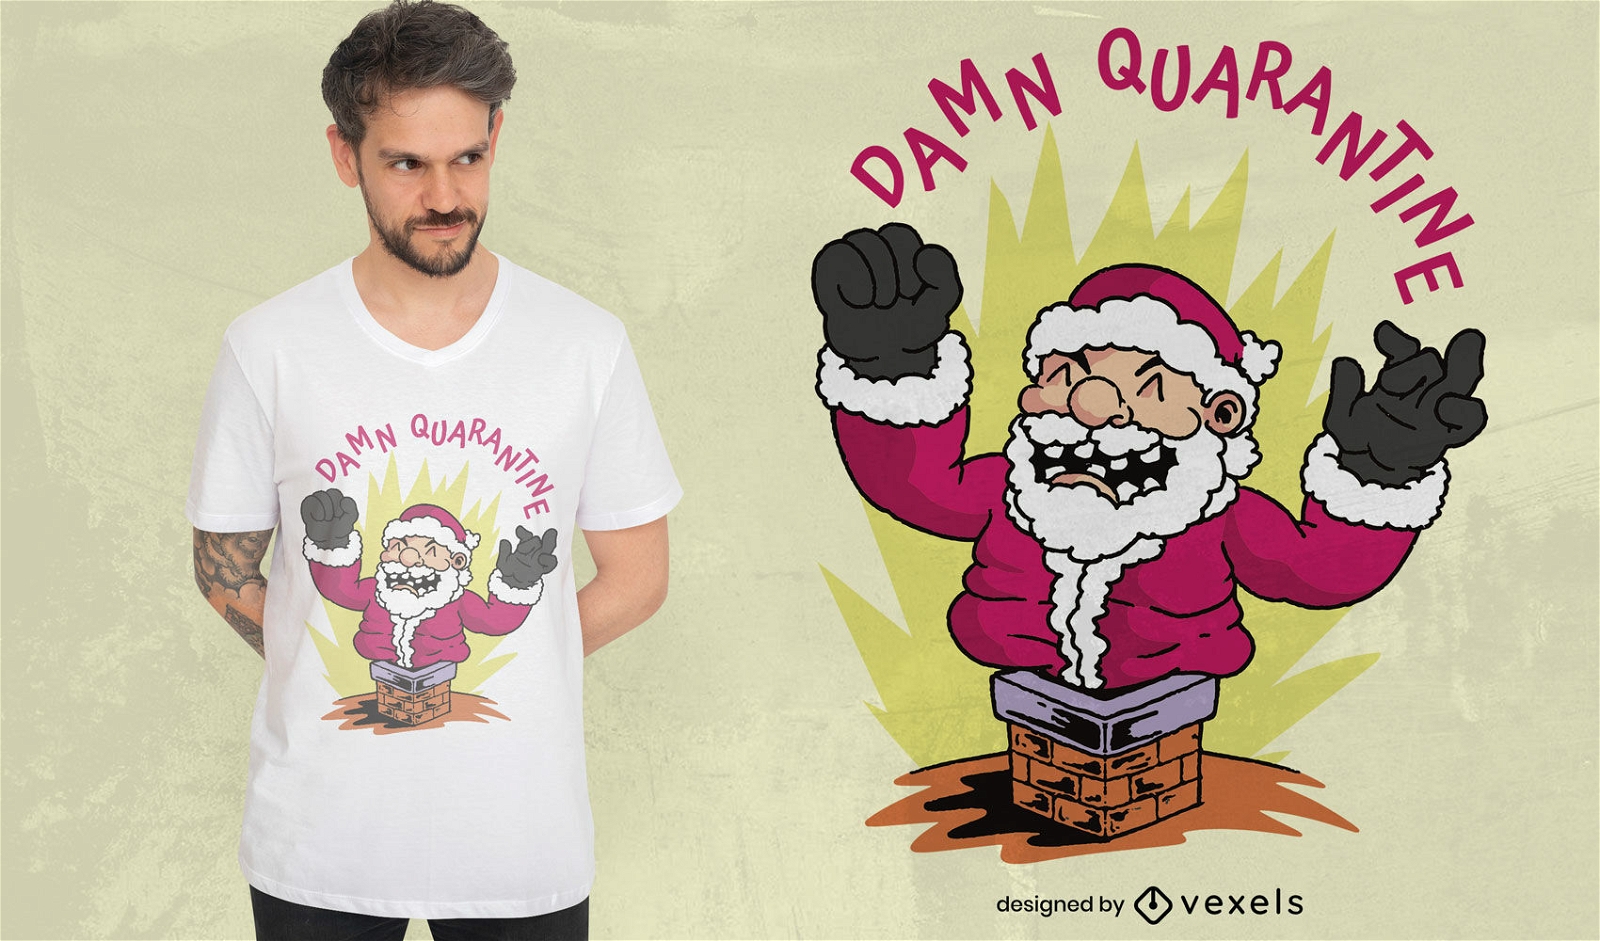 Funny fat santa t-shirt design